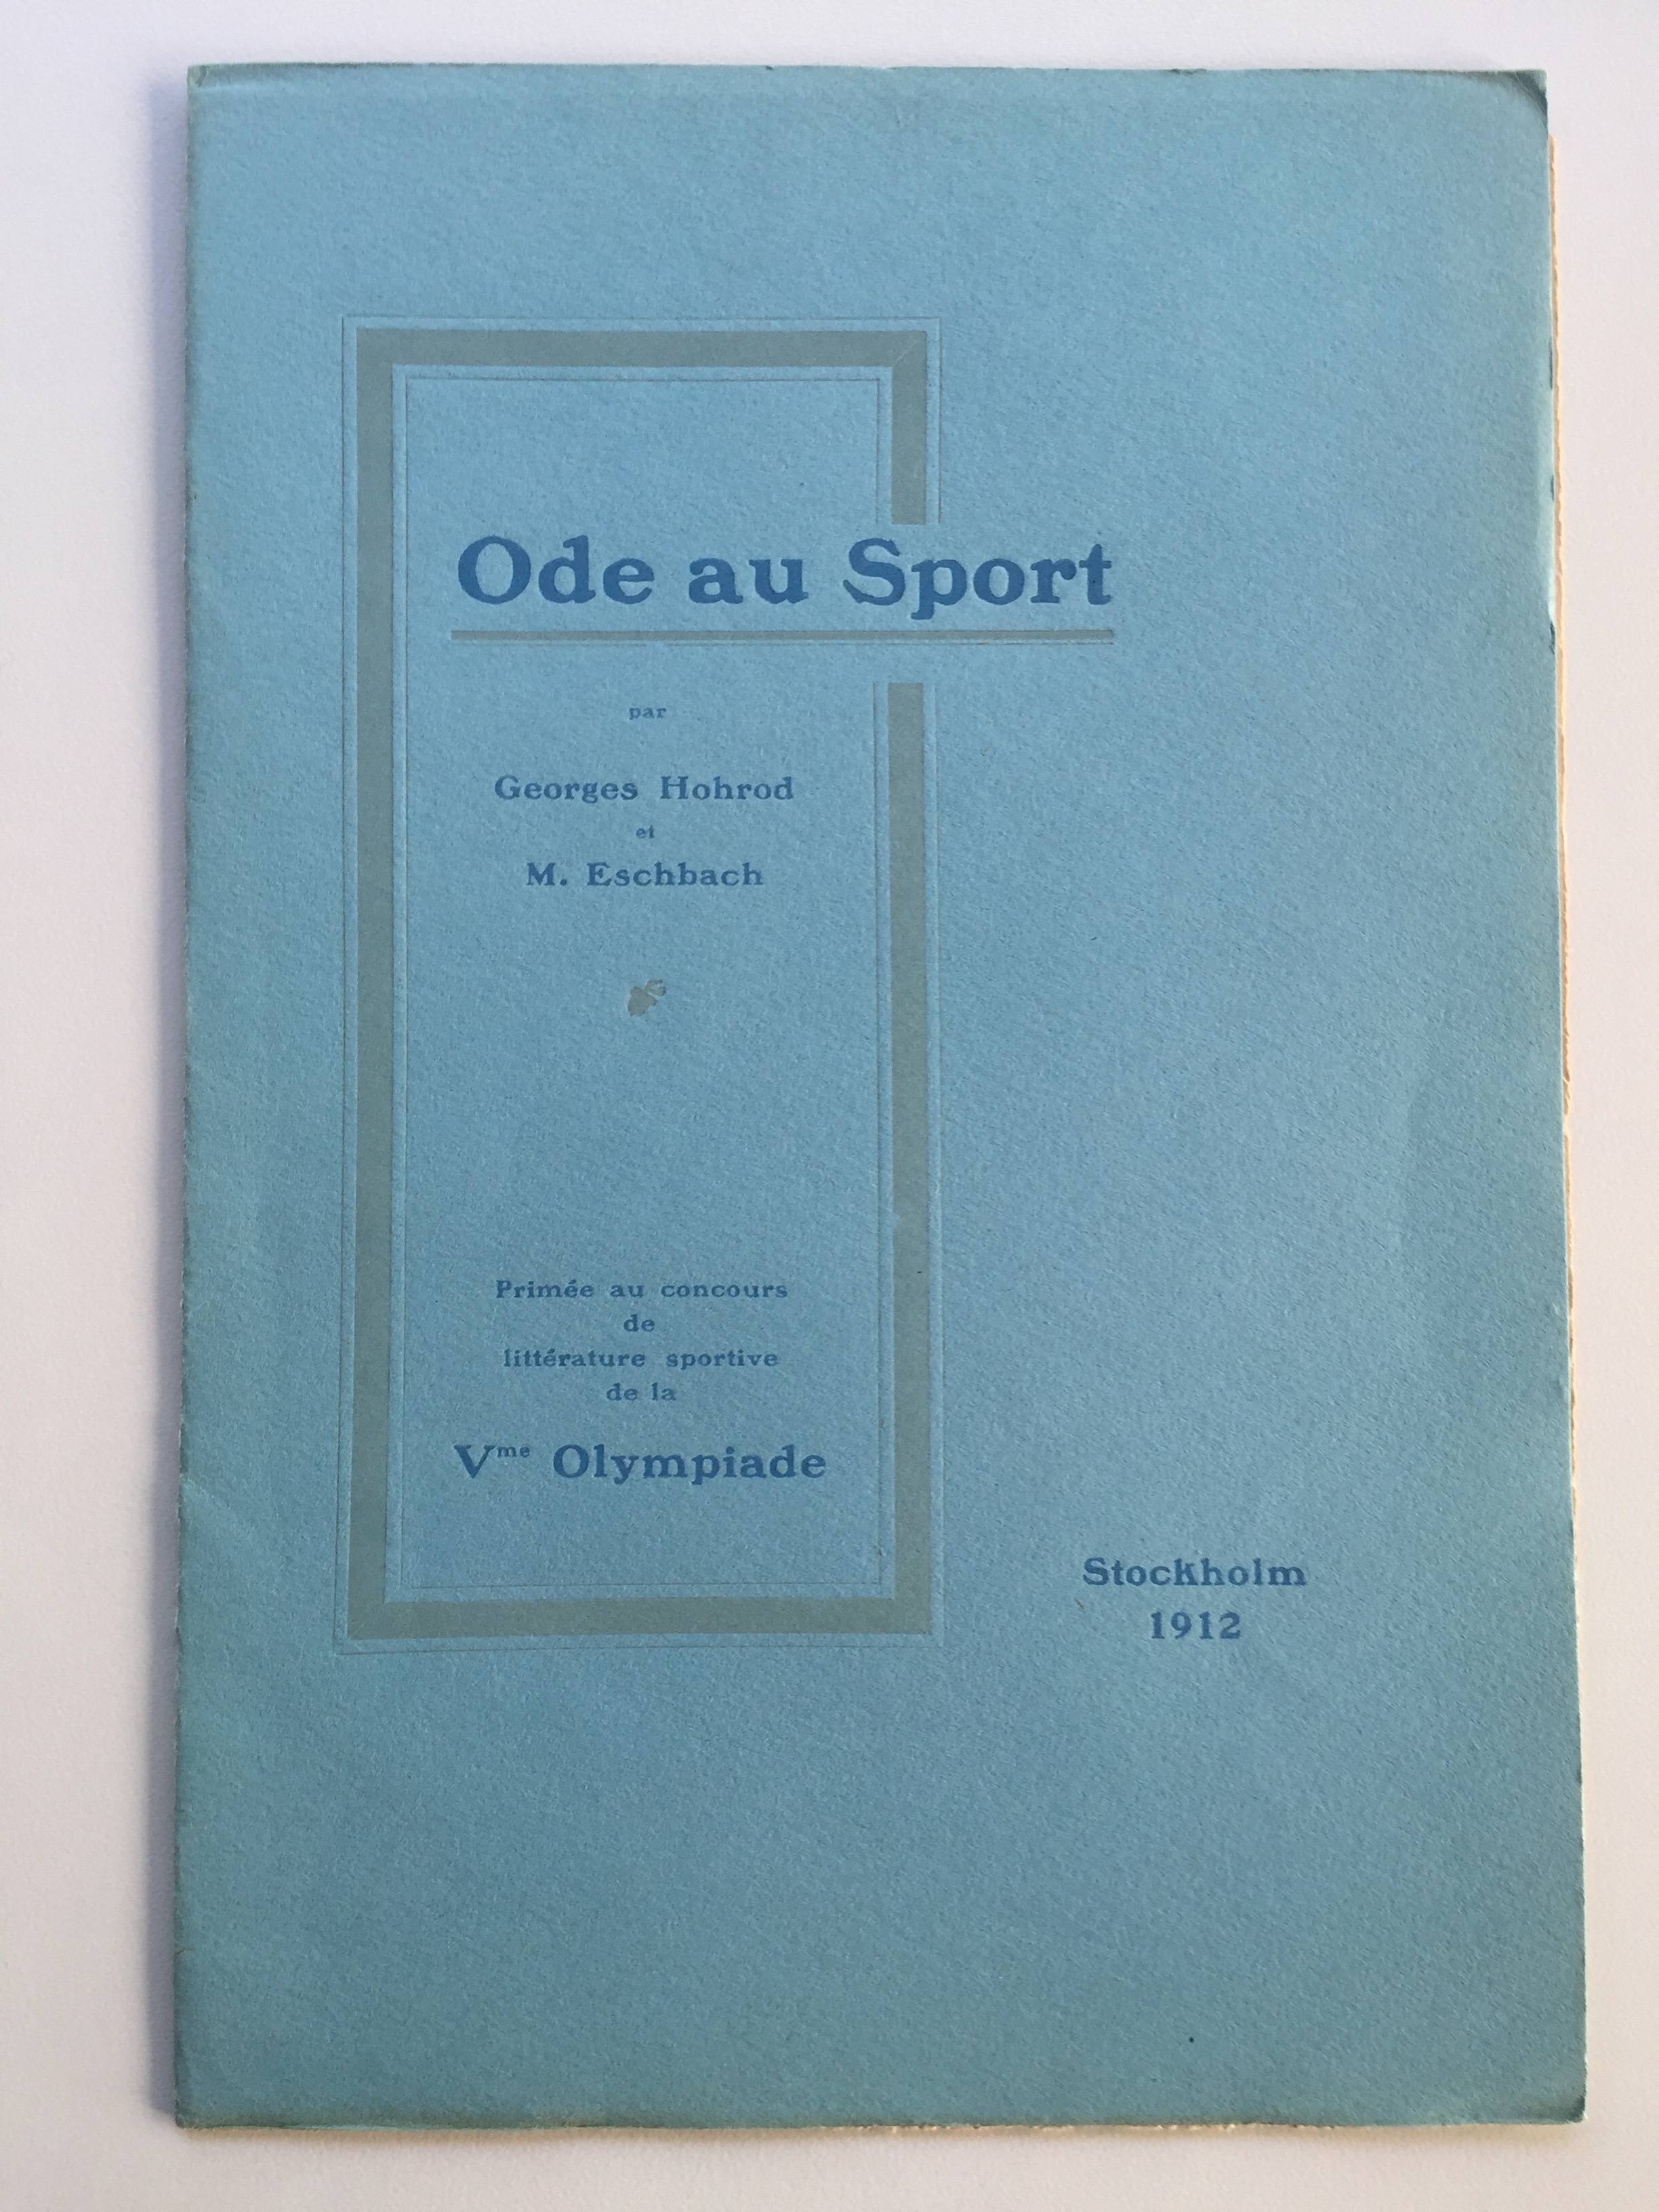 Pierre de Coubertin, "Ode to Sport"